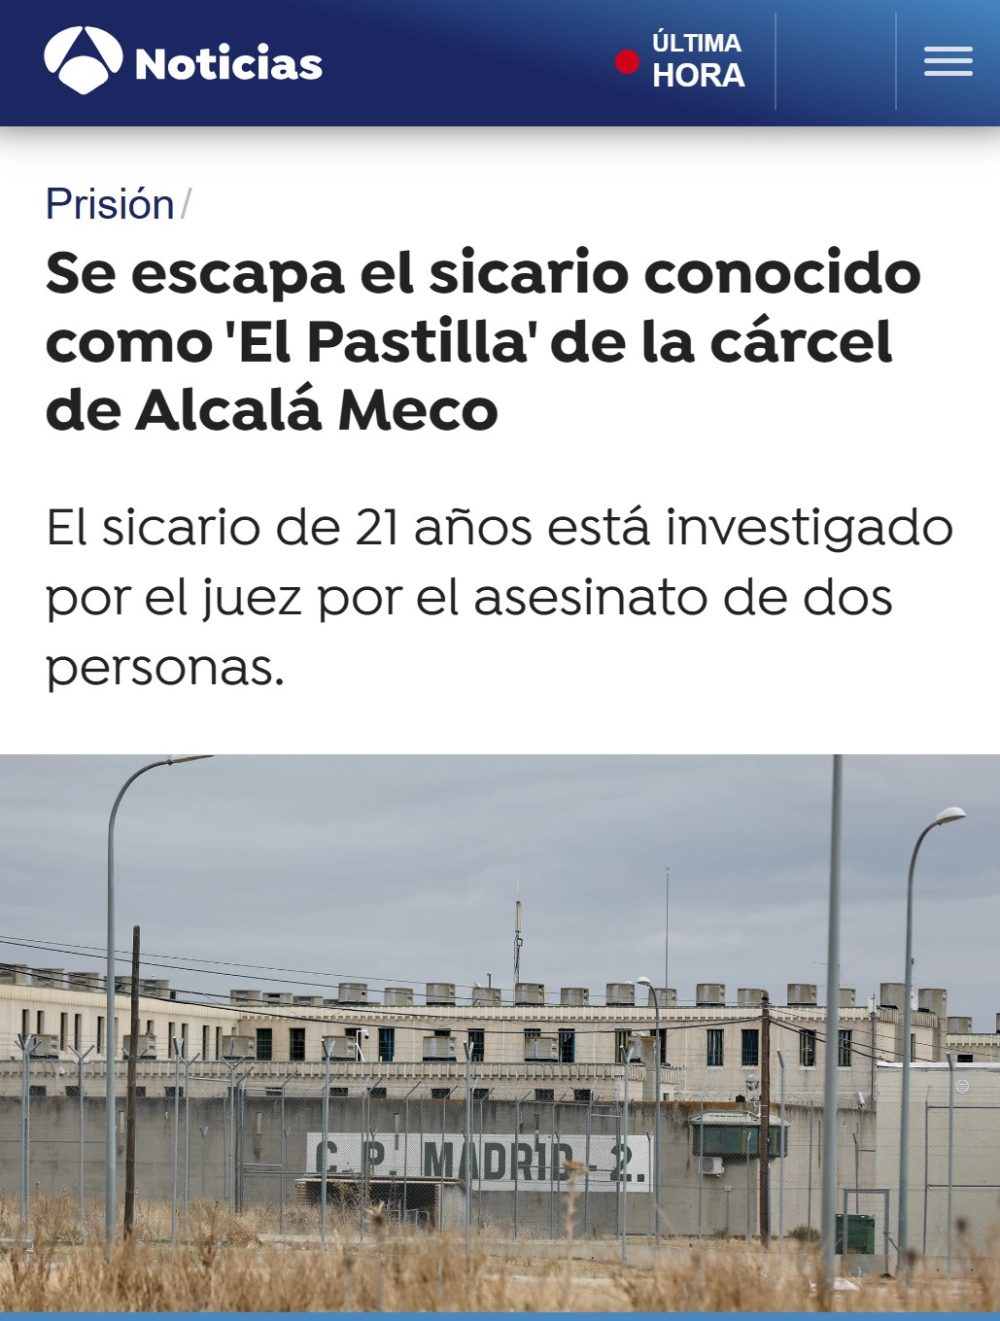 Un conocido sicario "se escapado" de Alcalá Meco